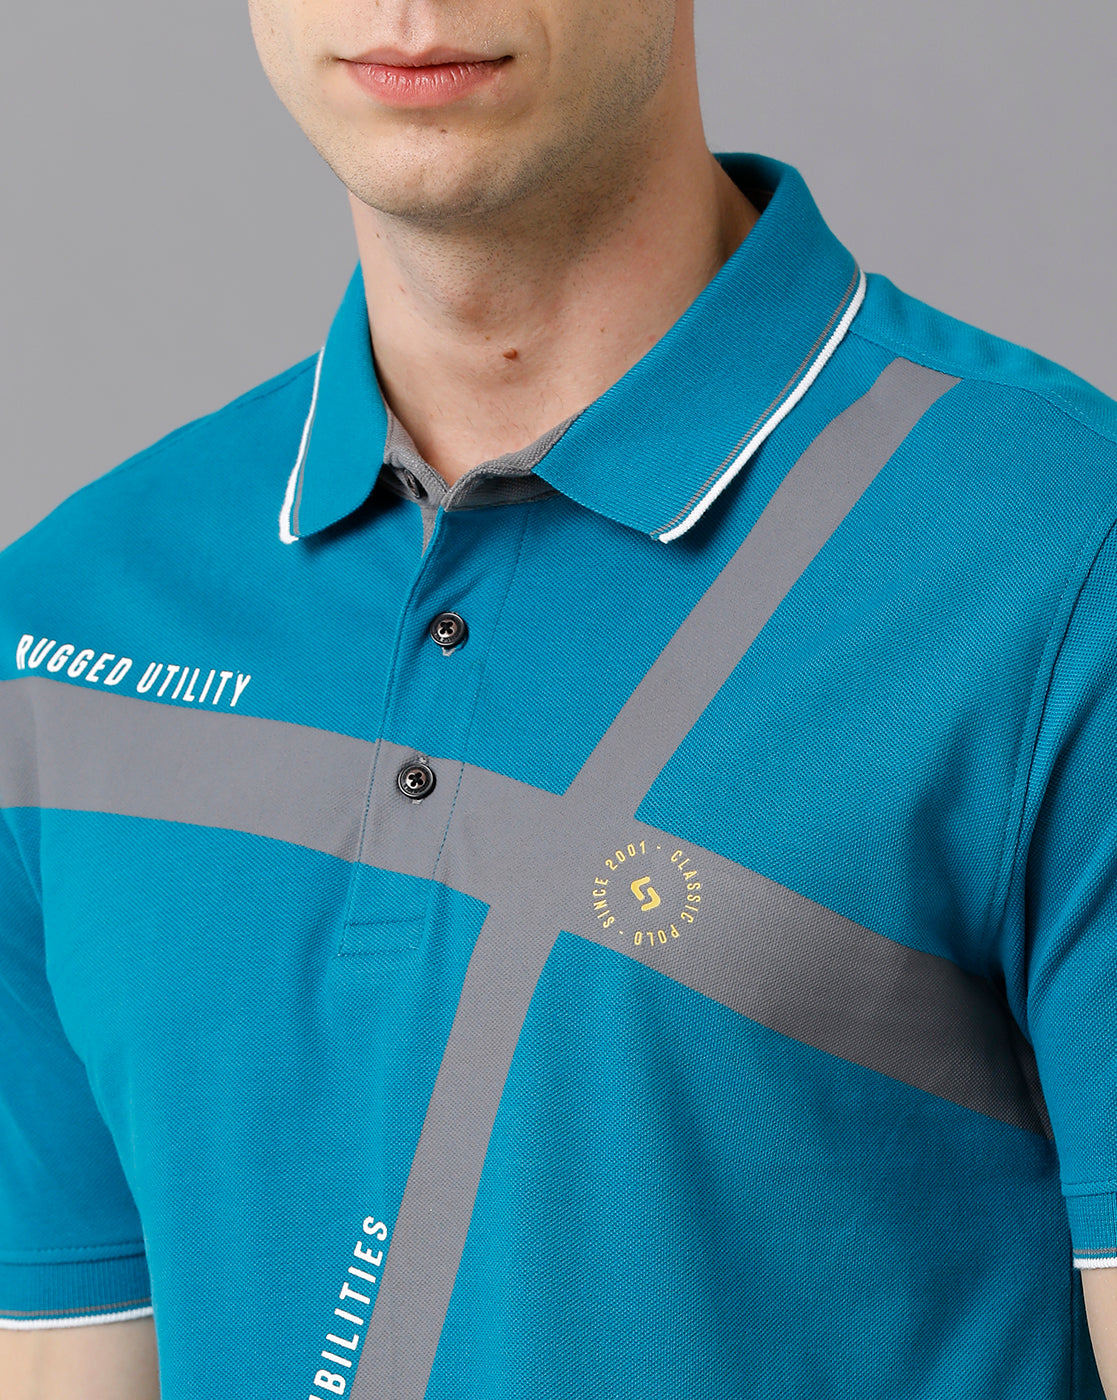 Classic Polo Men's Cotton Printed Slim Fit Blue T-Shirt | Prm - 701 A